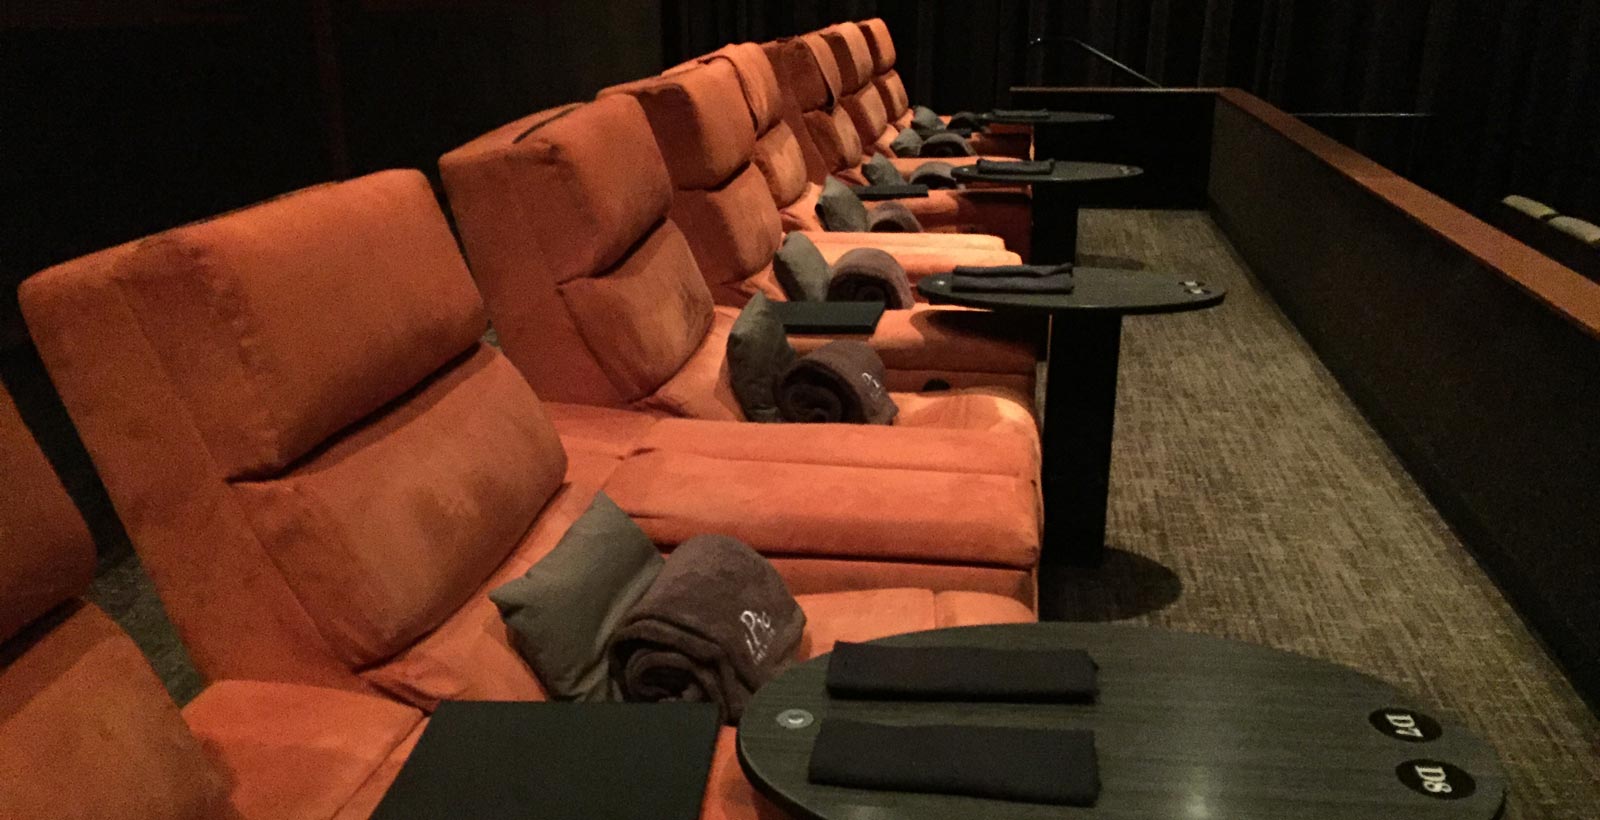 Les banquettes d'une salle de cinéma de la chaîne iPic Entertainment (Photo : Ray Bouknight).